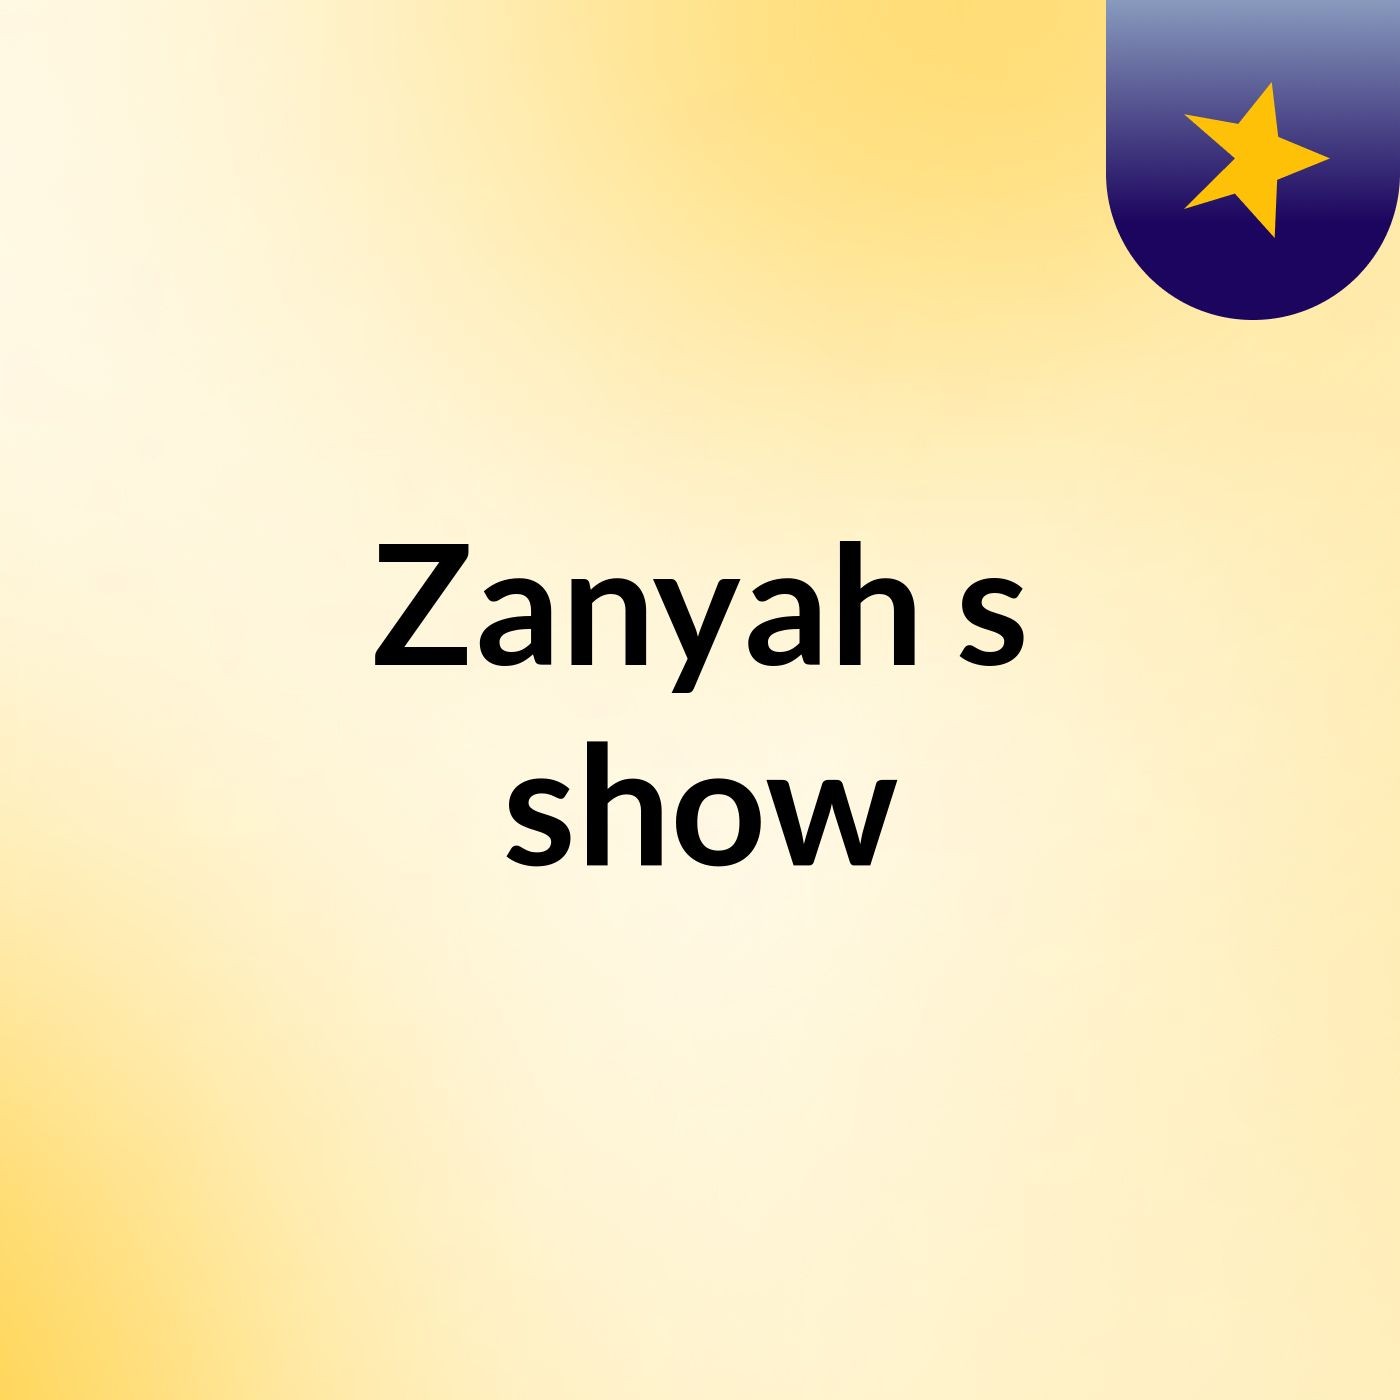 Zanyah's show